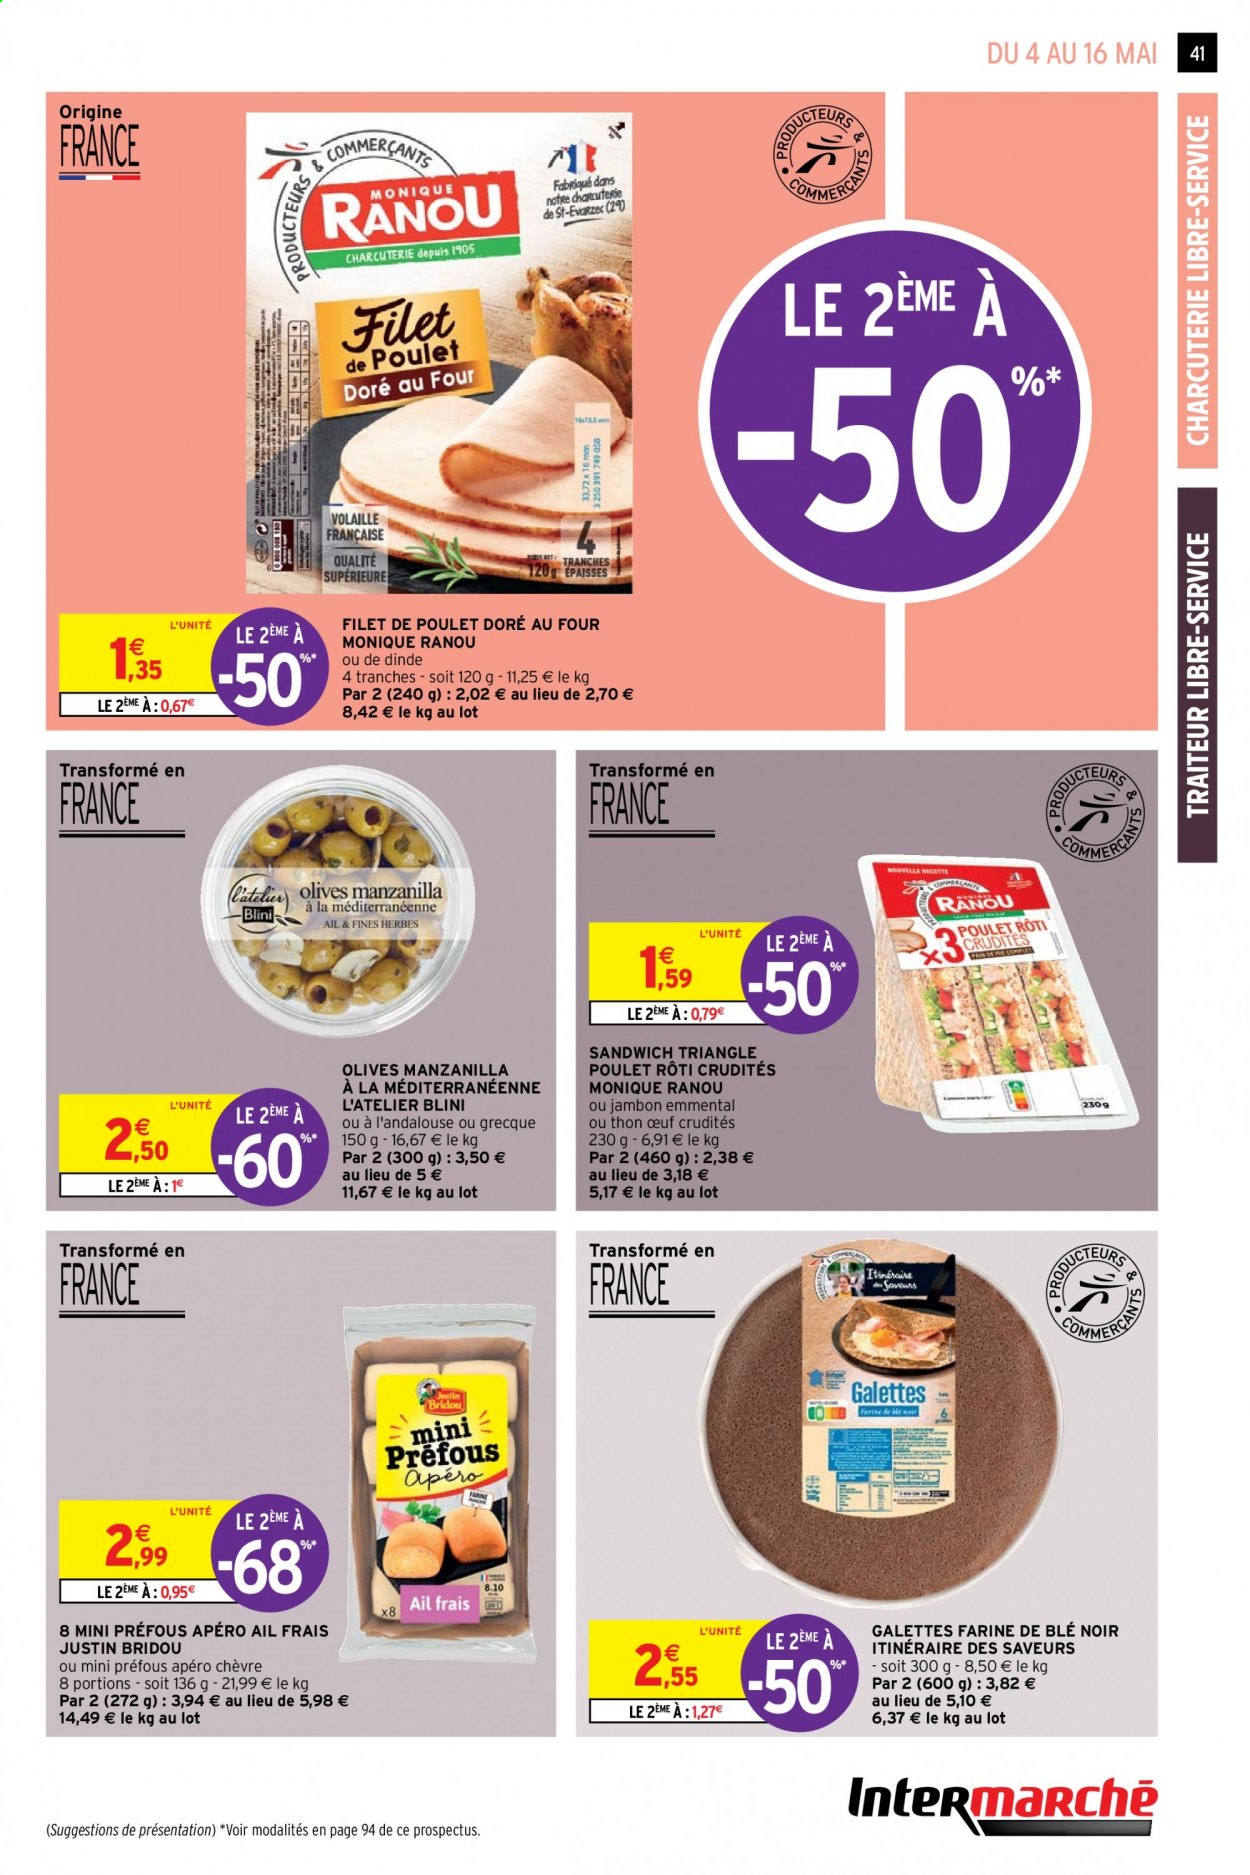 thumbnail - Catalogue Intermarché Hyper - 04/05/2021 - 16/05/2021 - Produits soldés - galettes, filet de poulet, viande de poulet, thon, sandwich, blini, farine, olives. Page 41.